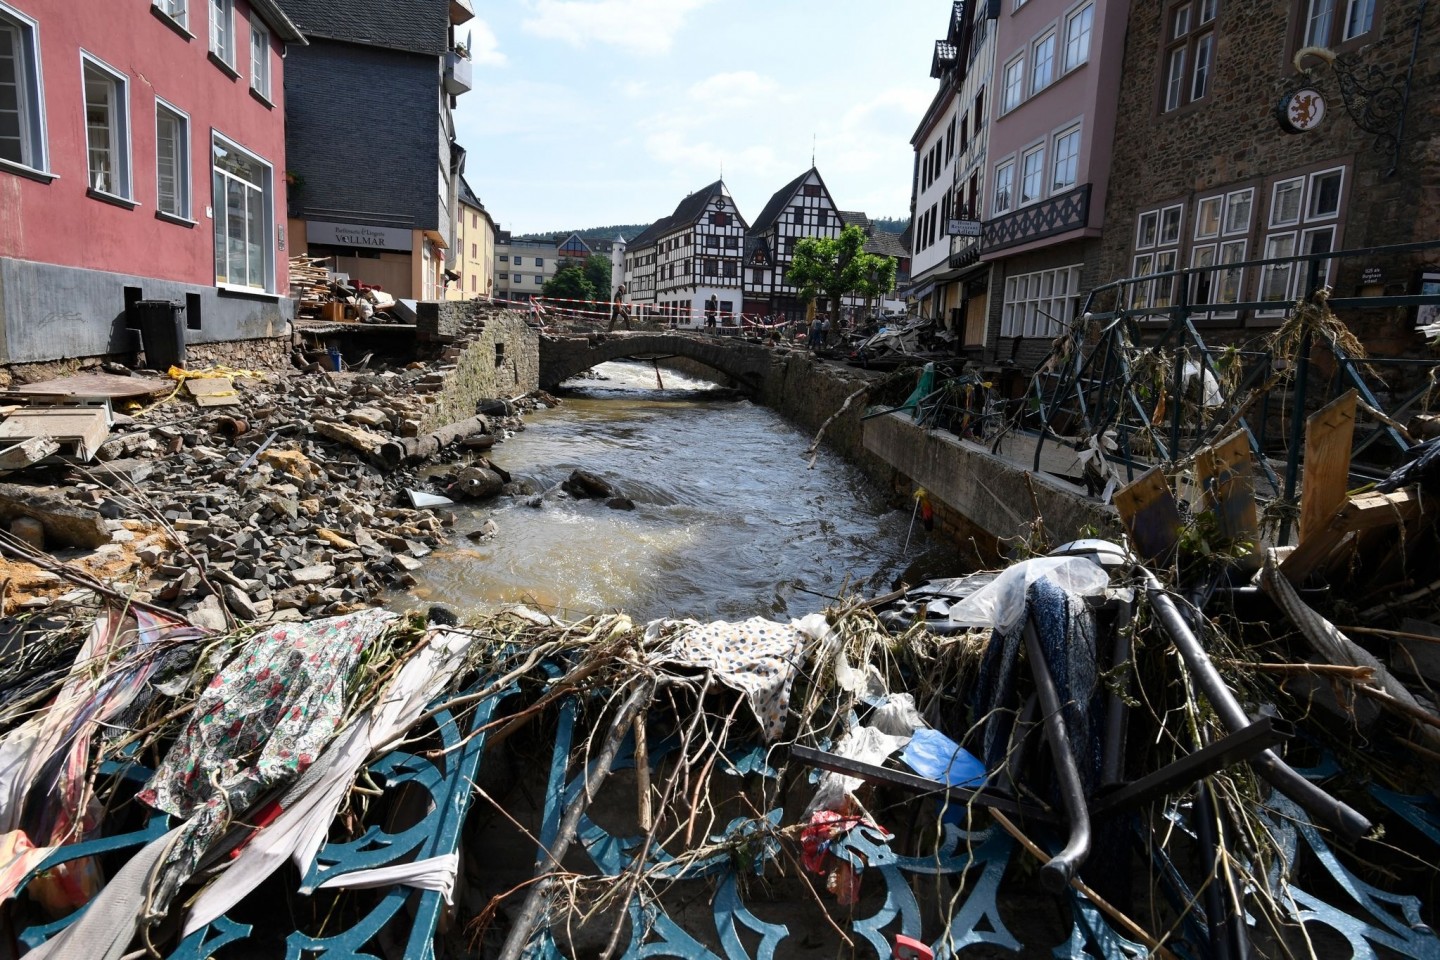 Viel Wasser - binnen kurzer Zeit: Die Hochwasserkatastrophe im Westen Deutschlands war aus Sicht von Klimaforschern ein extremes Ereignis.